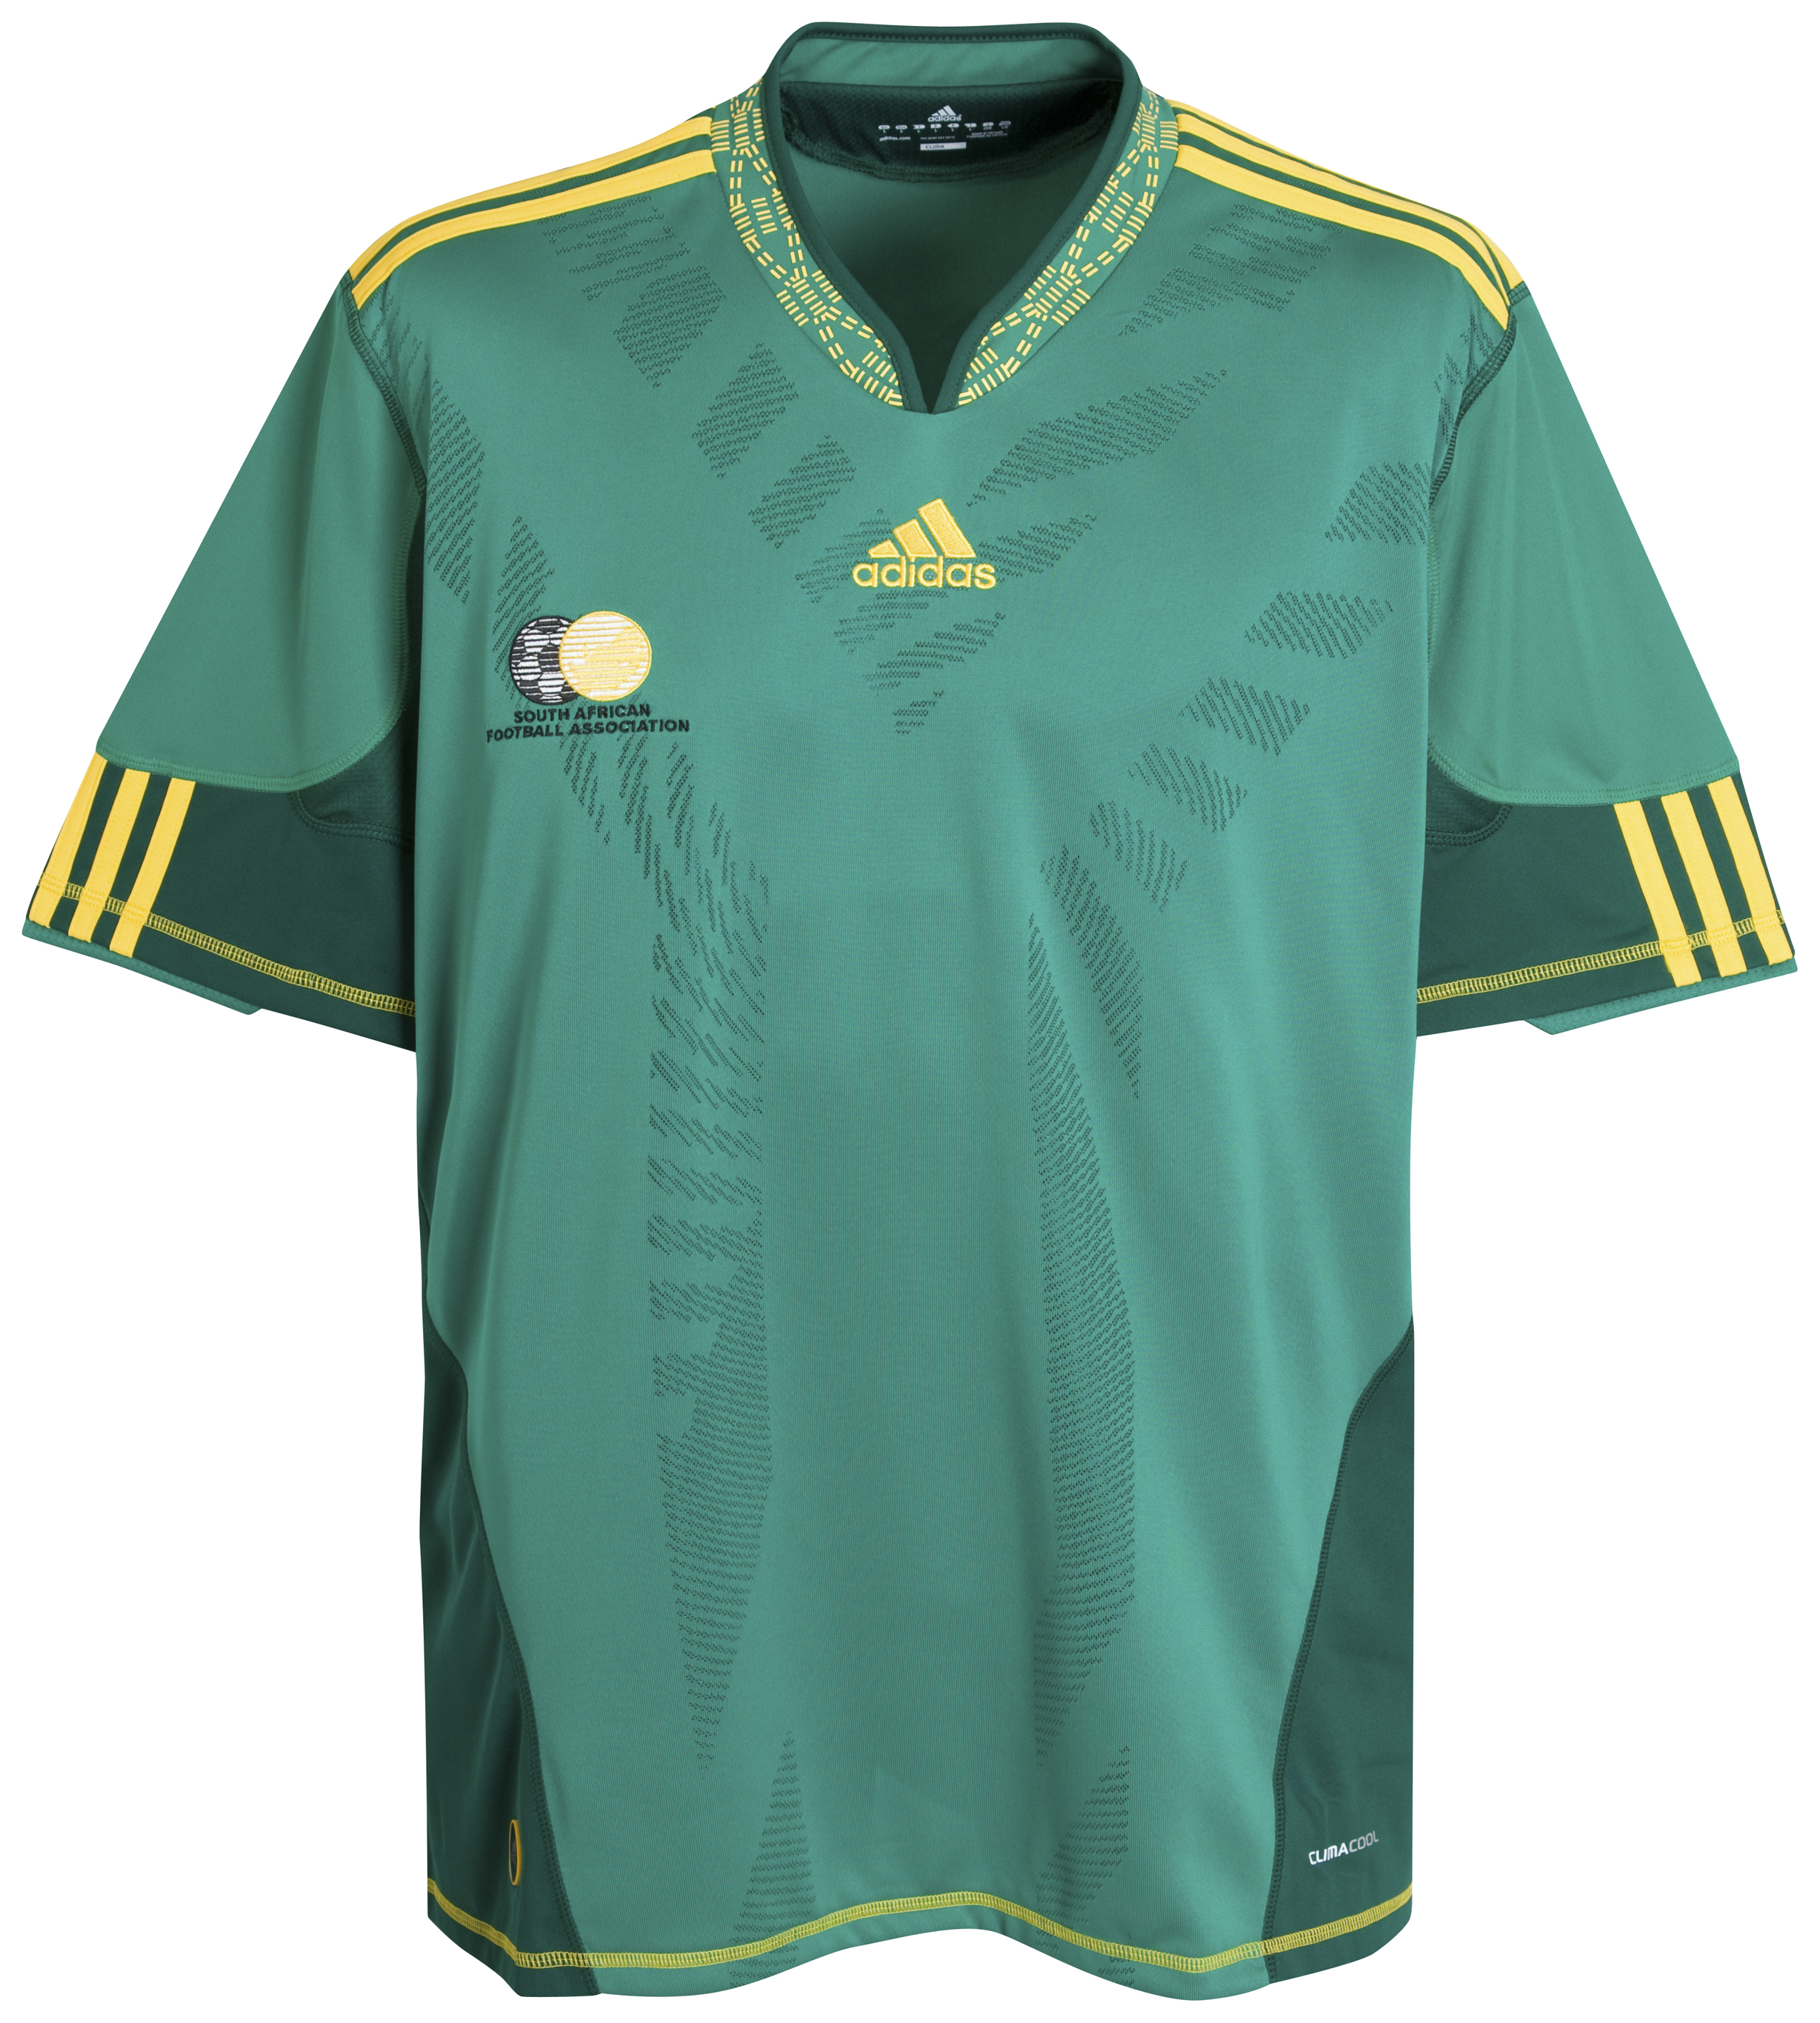 الملابس الخاصة بالمنتخبات في كأس العالم (جنوب أفريقيا 2010) Kb-66945